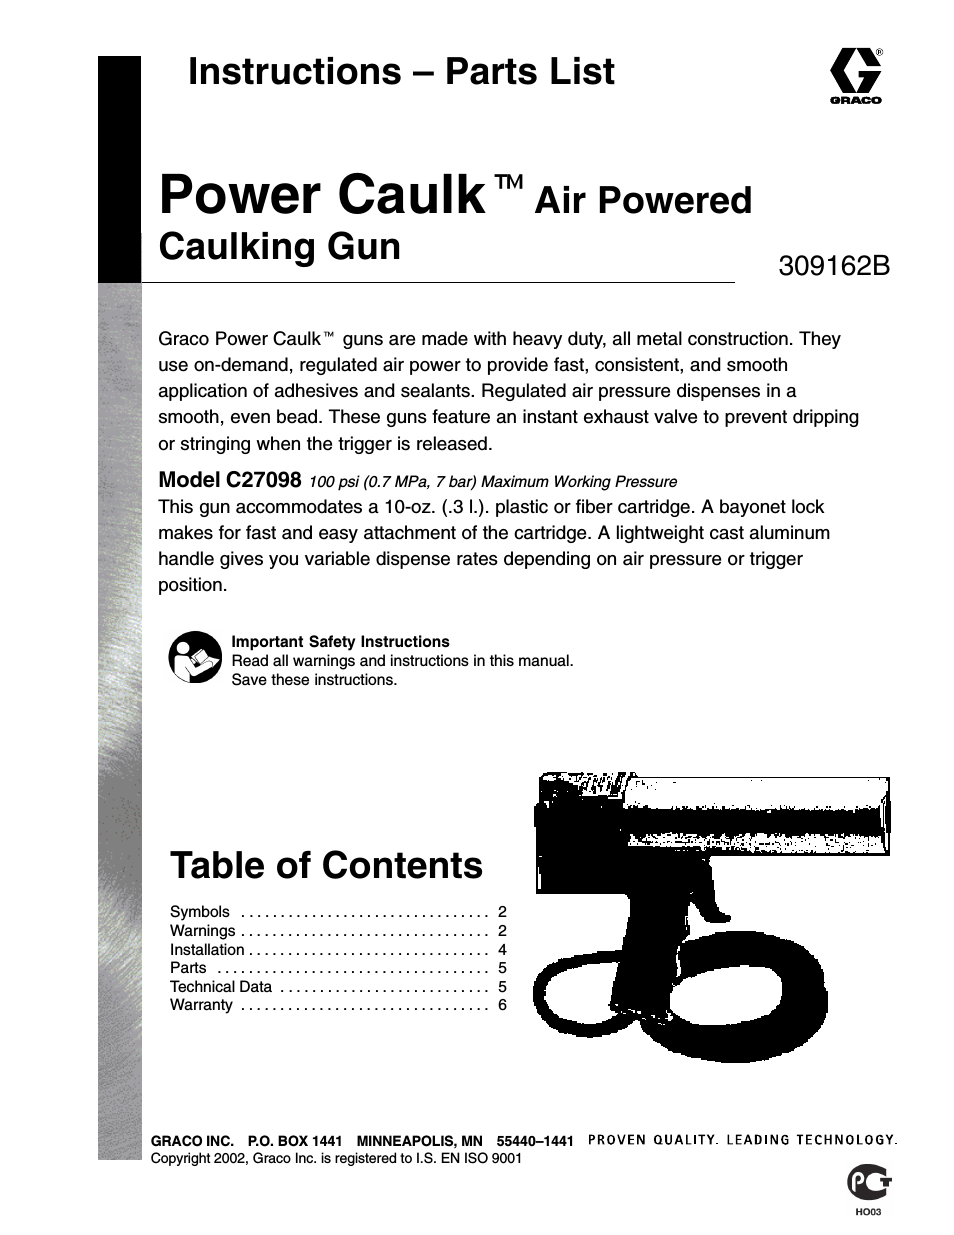 Power Caulk 309162B